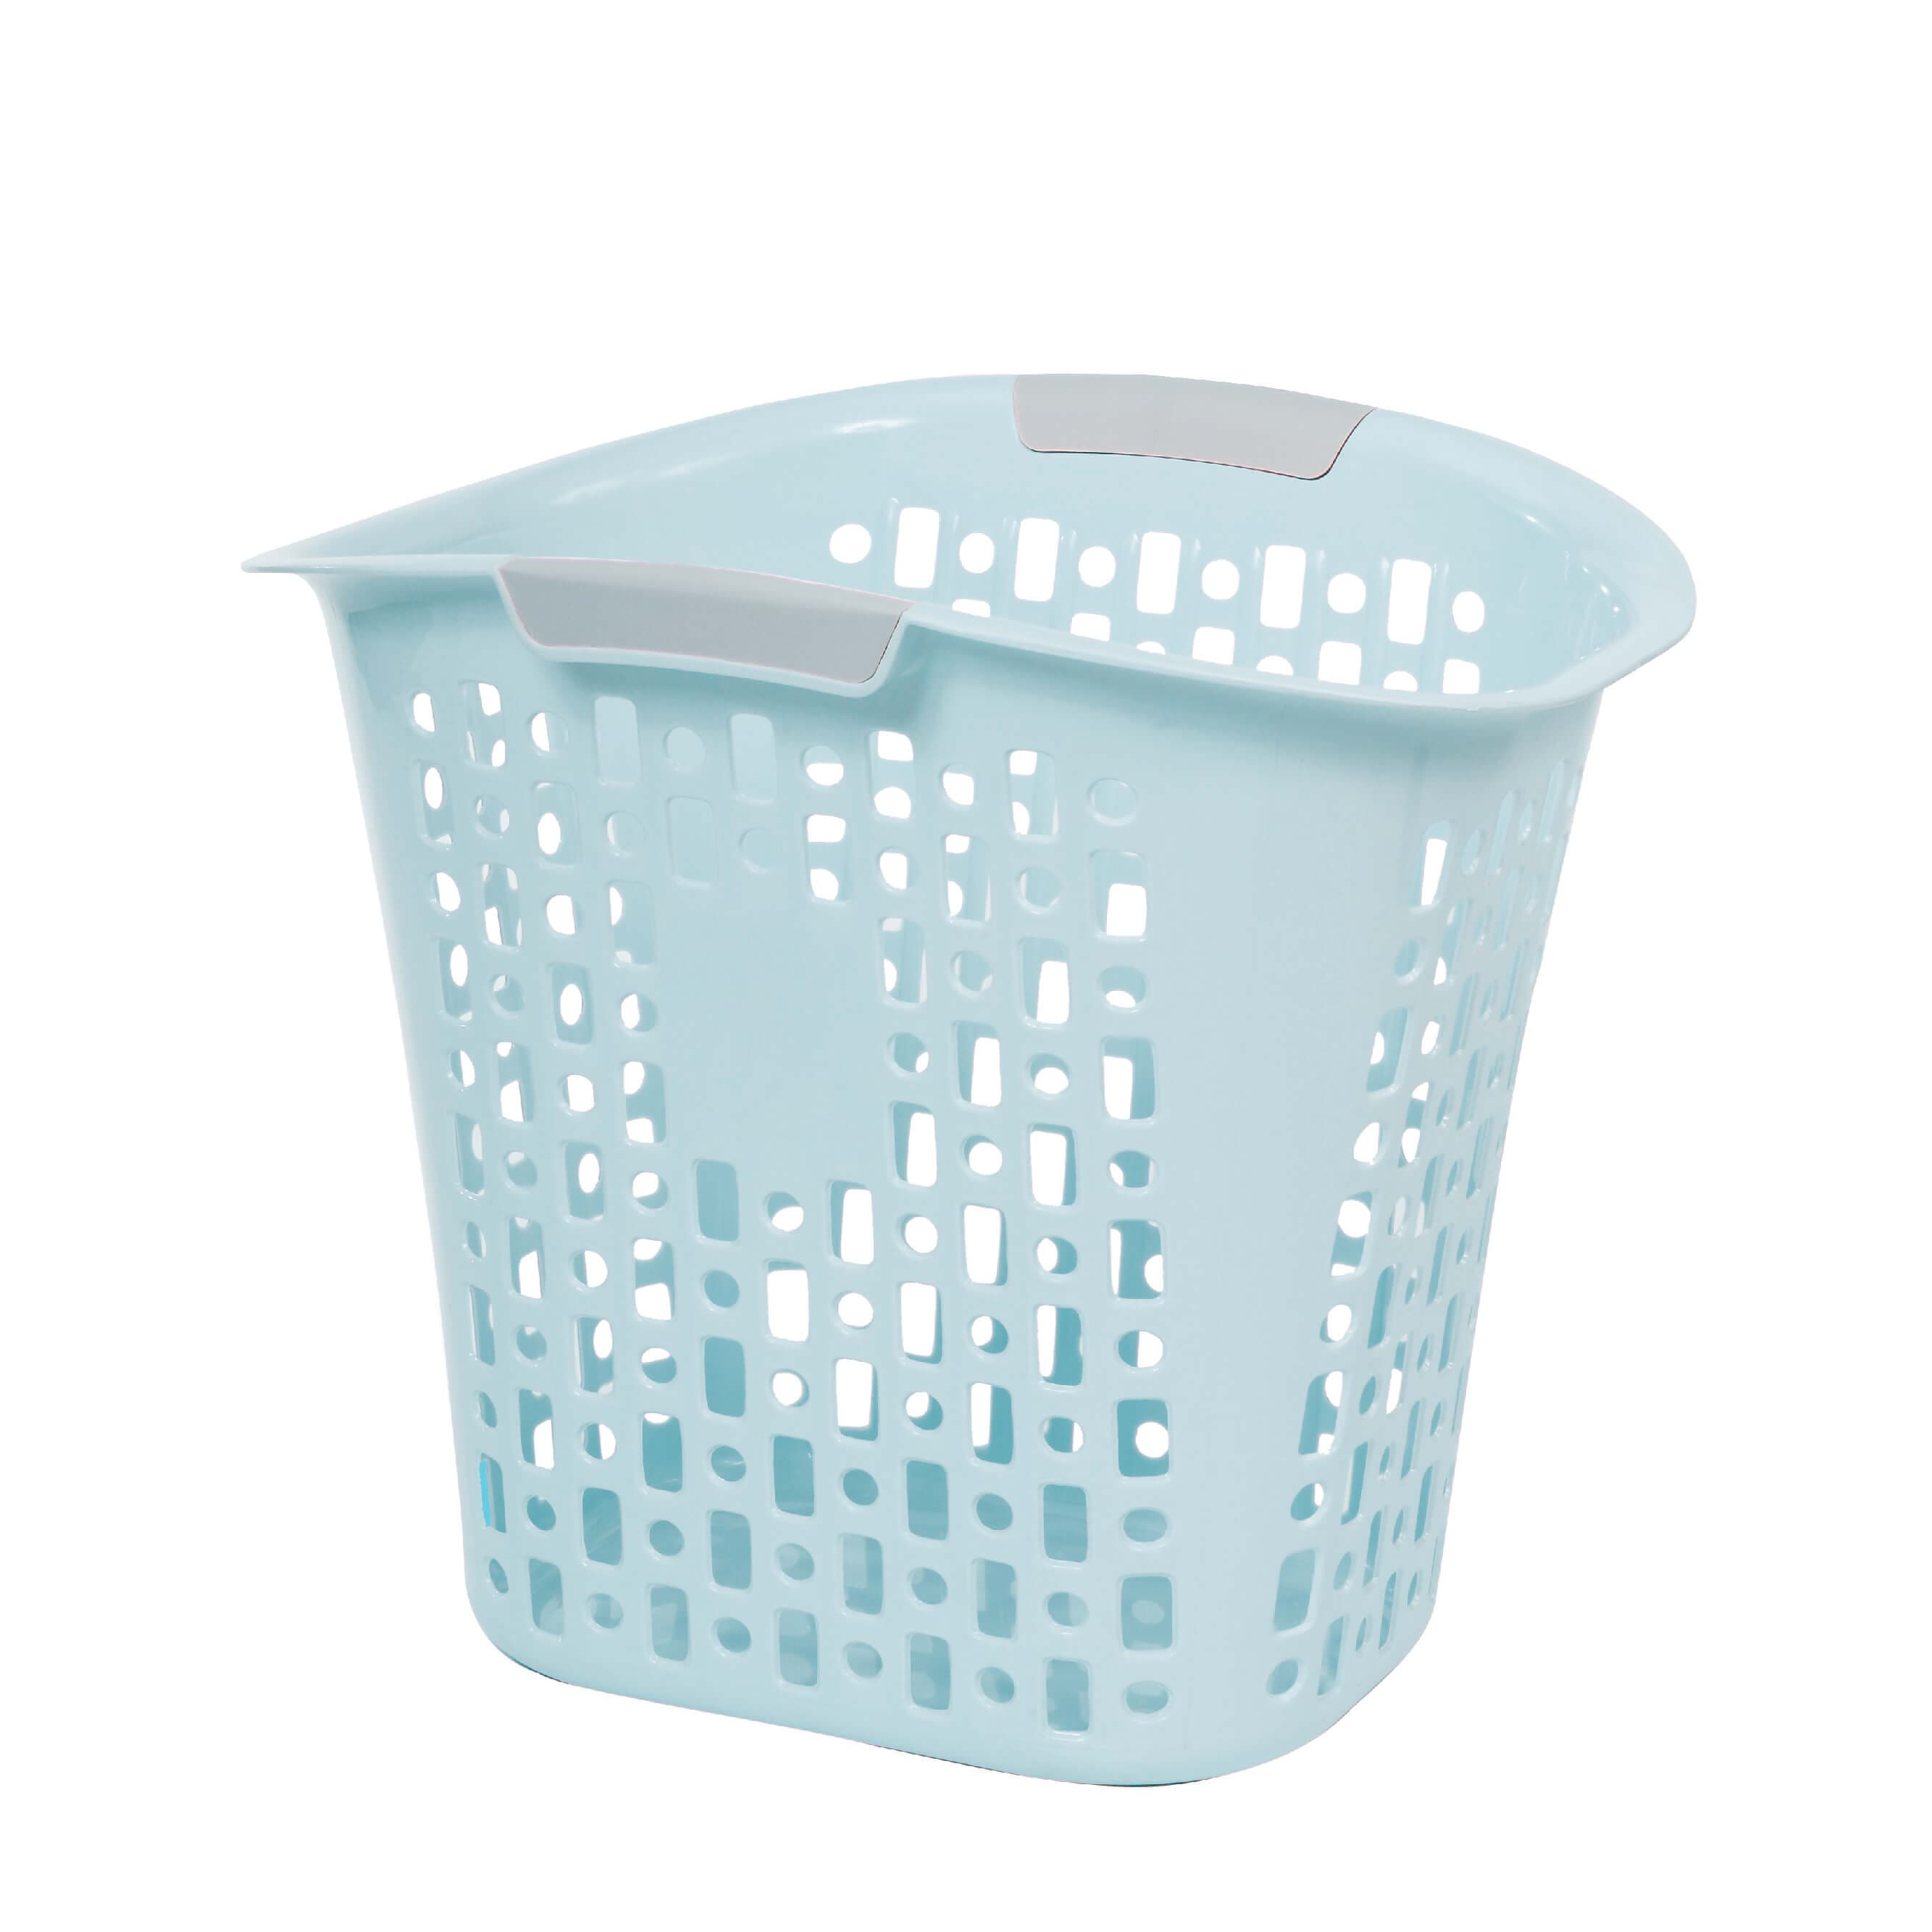 Household _ Laundry Basket _ Medium Basket I1023